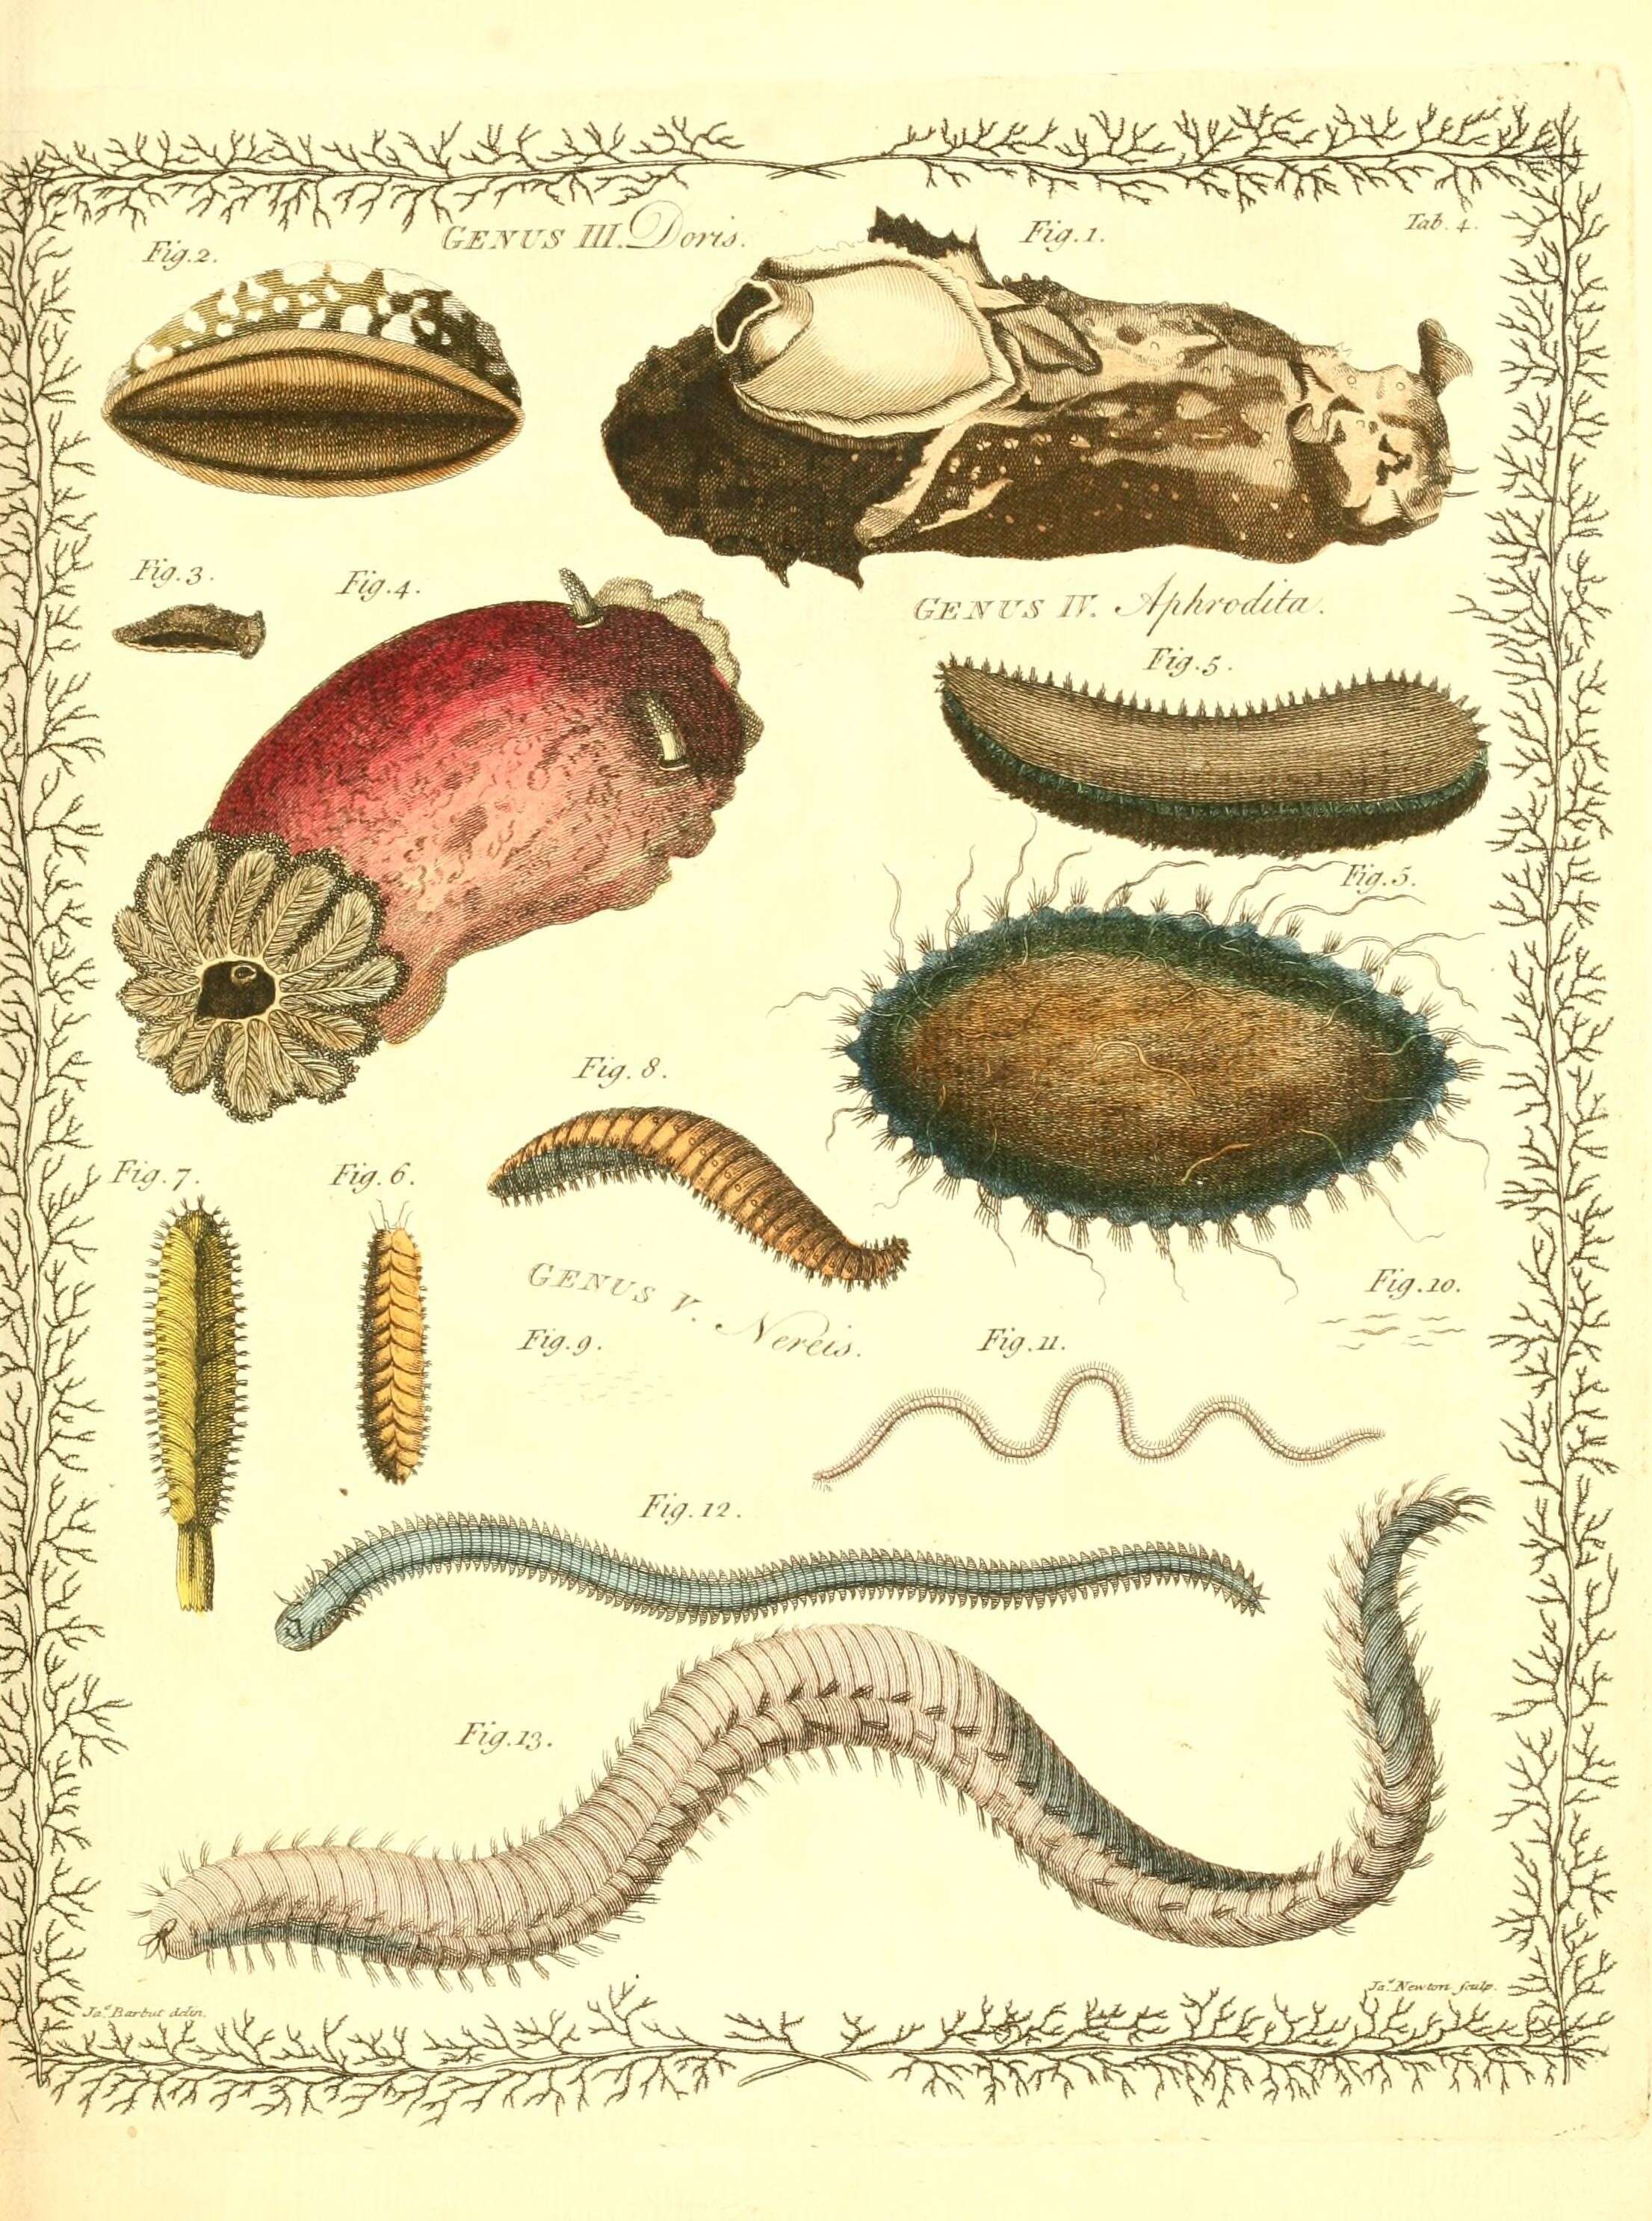 Imagem de Doris verrucosa Linnaeus 1758